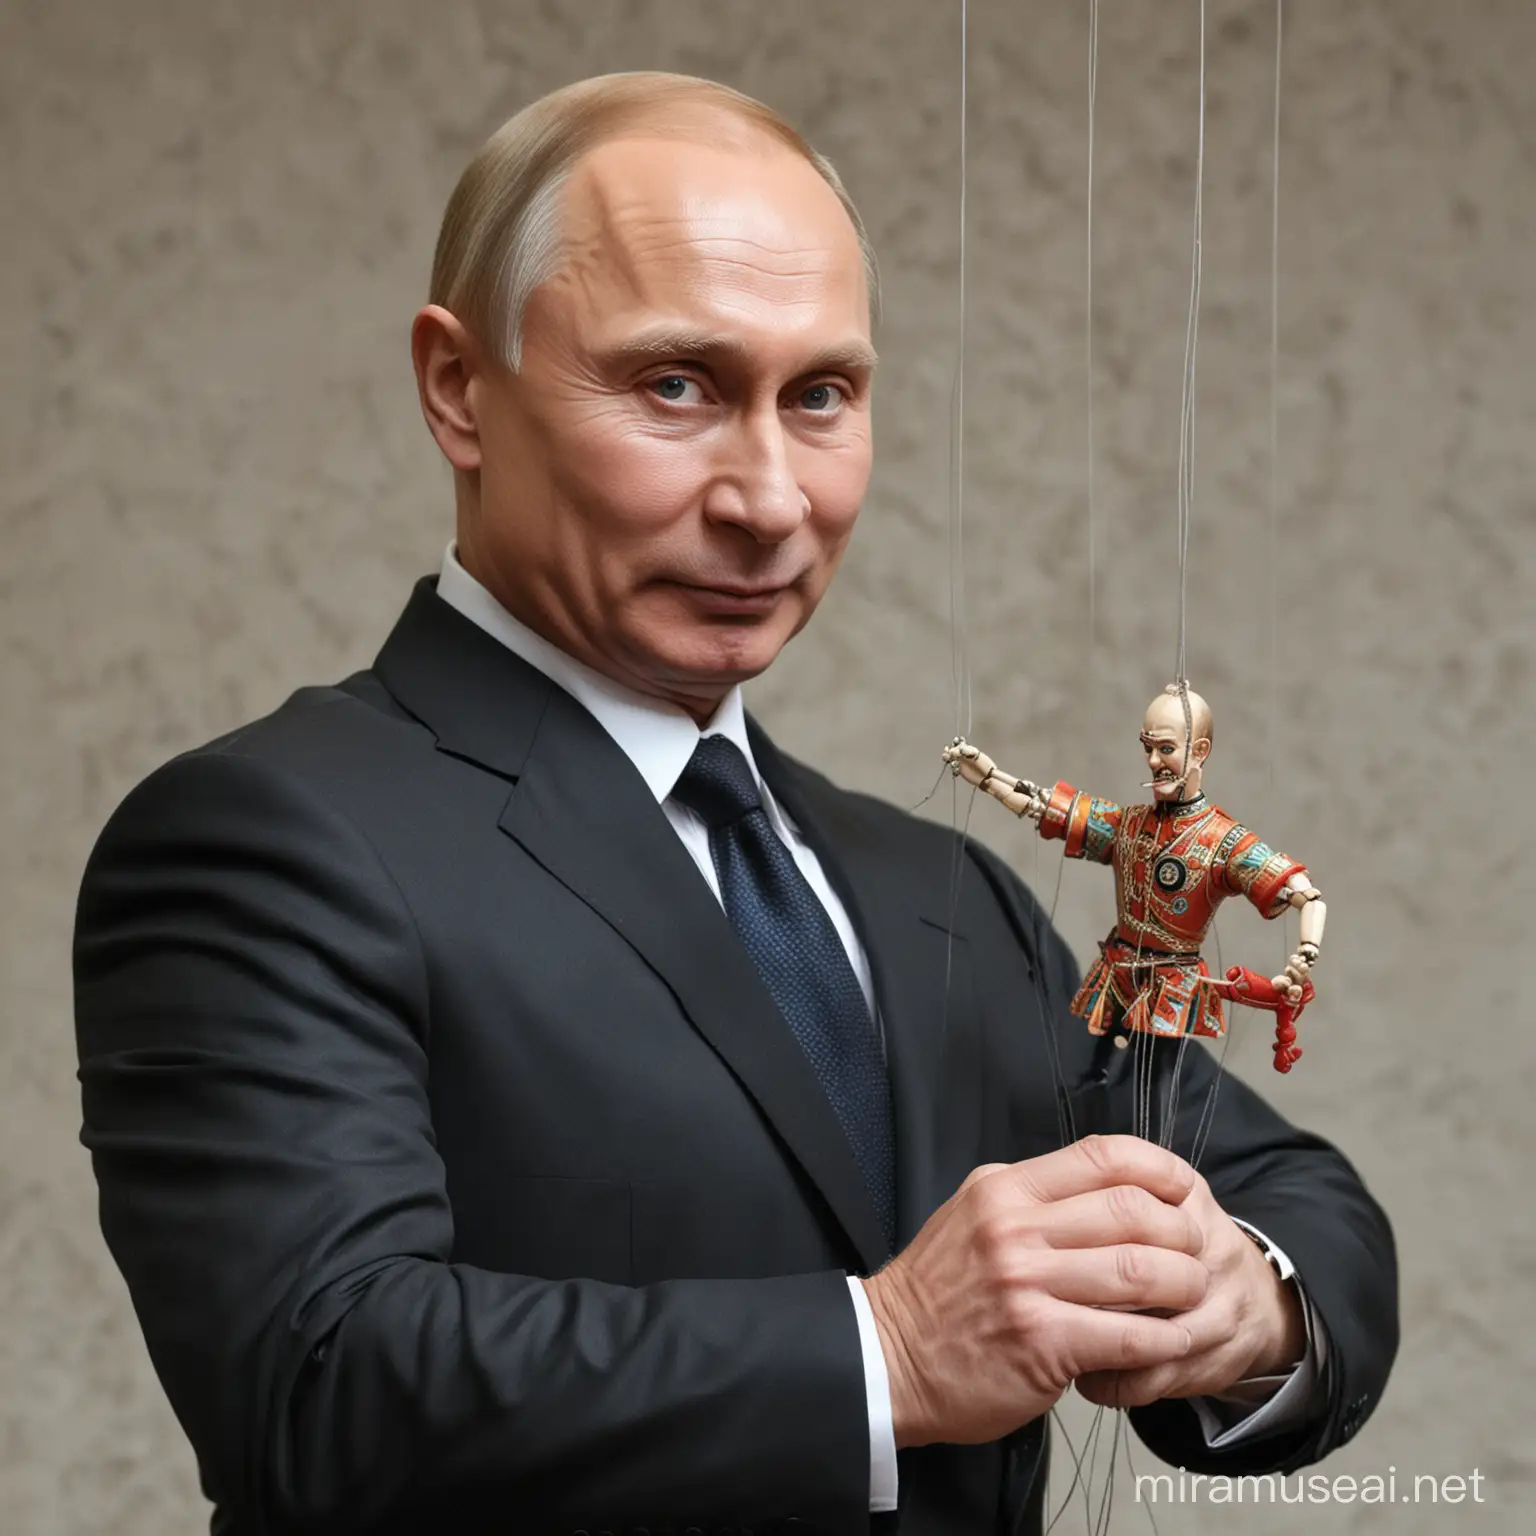 Vladimir putin holding marionette strings.
